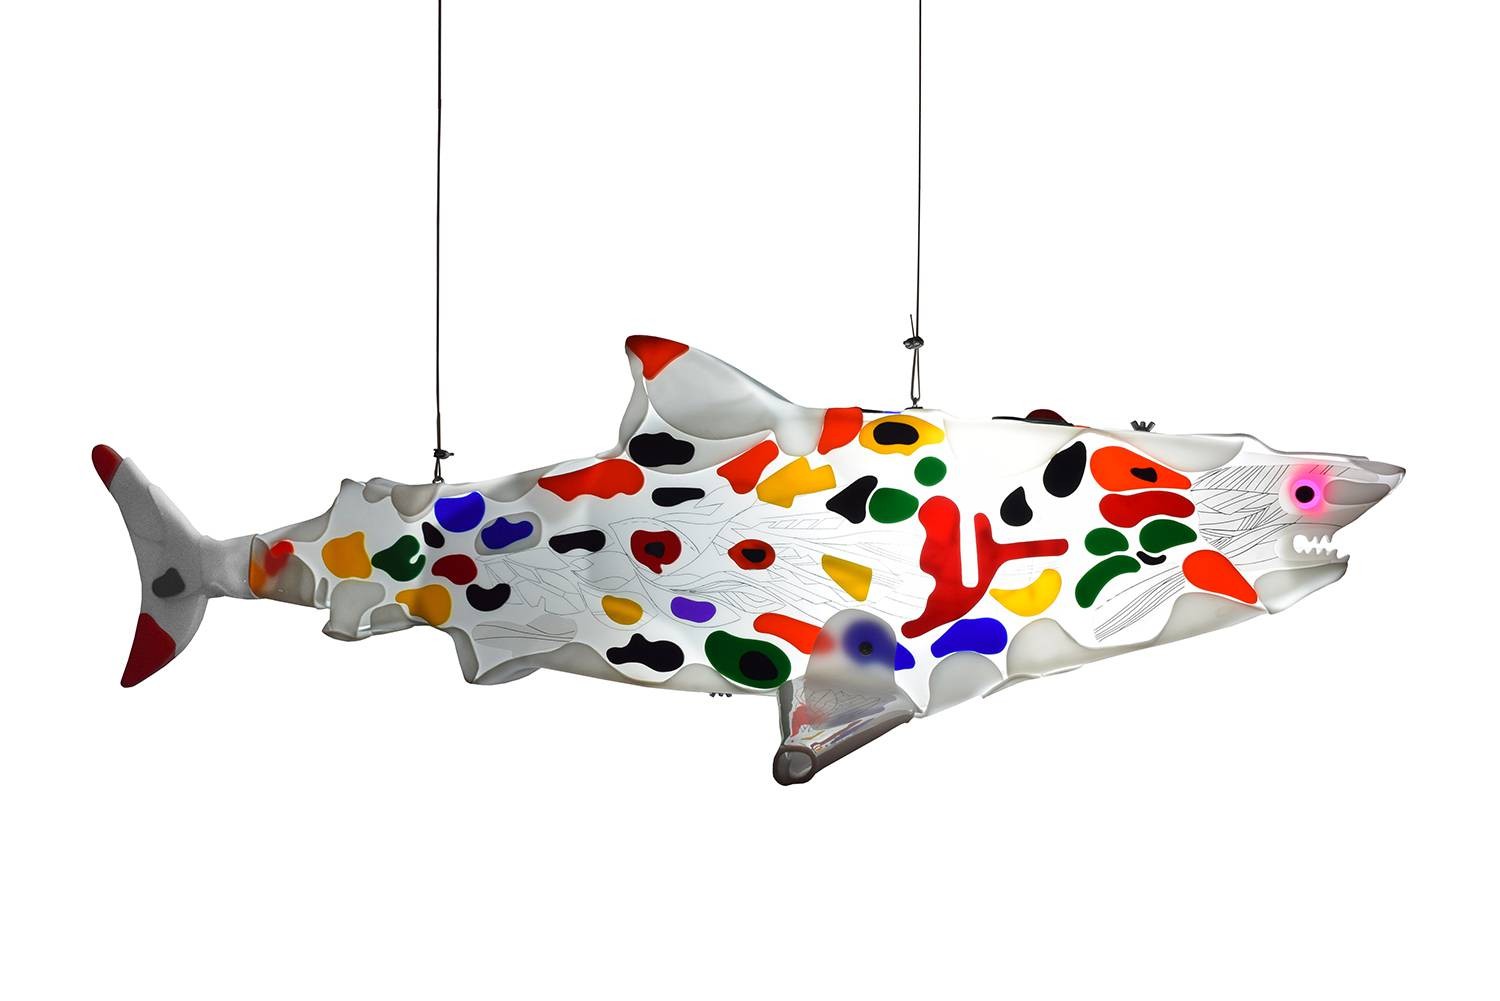 Imaginative wanderer 2 is a shark light sculpture